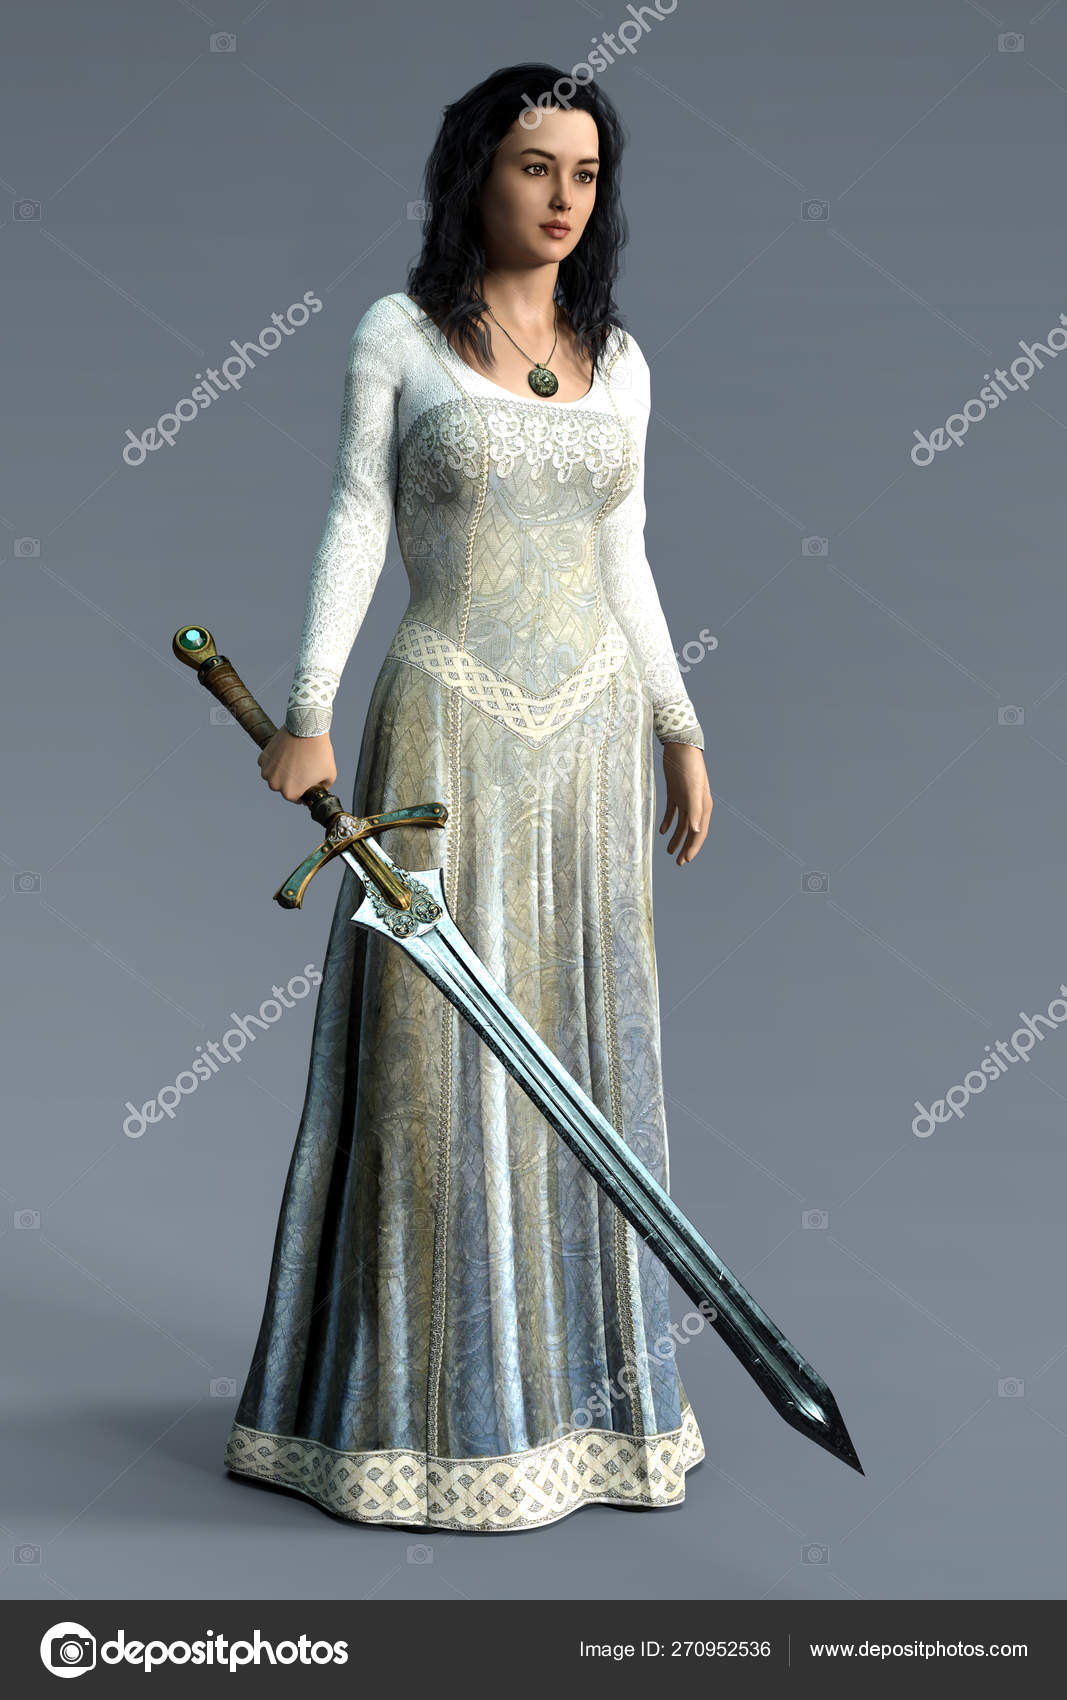 Mujer en vestido medieval: fotografía de stock © Fotolit2 #114712368